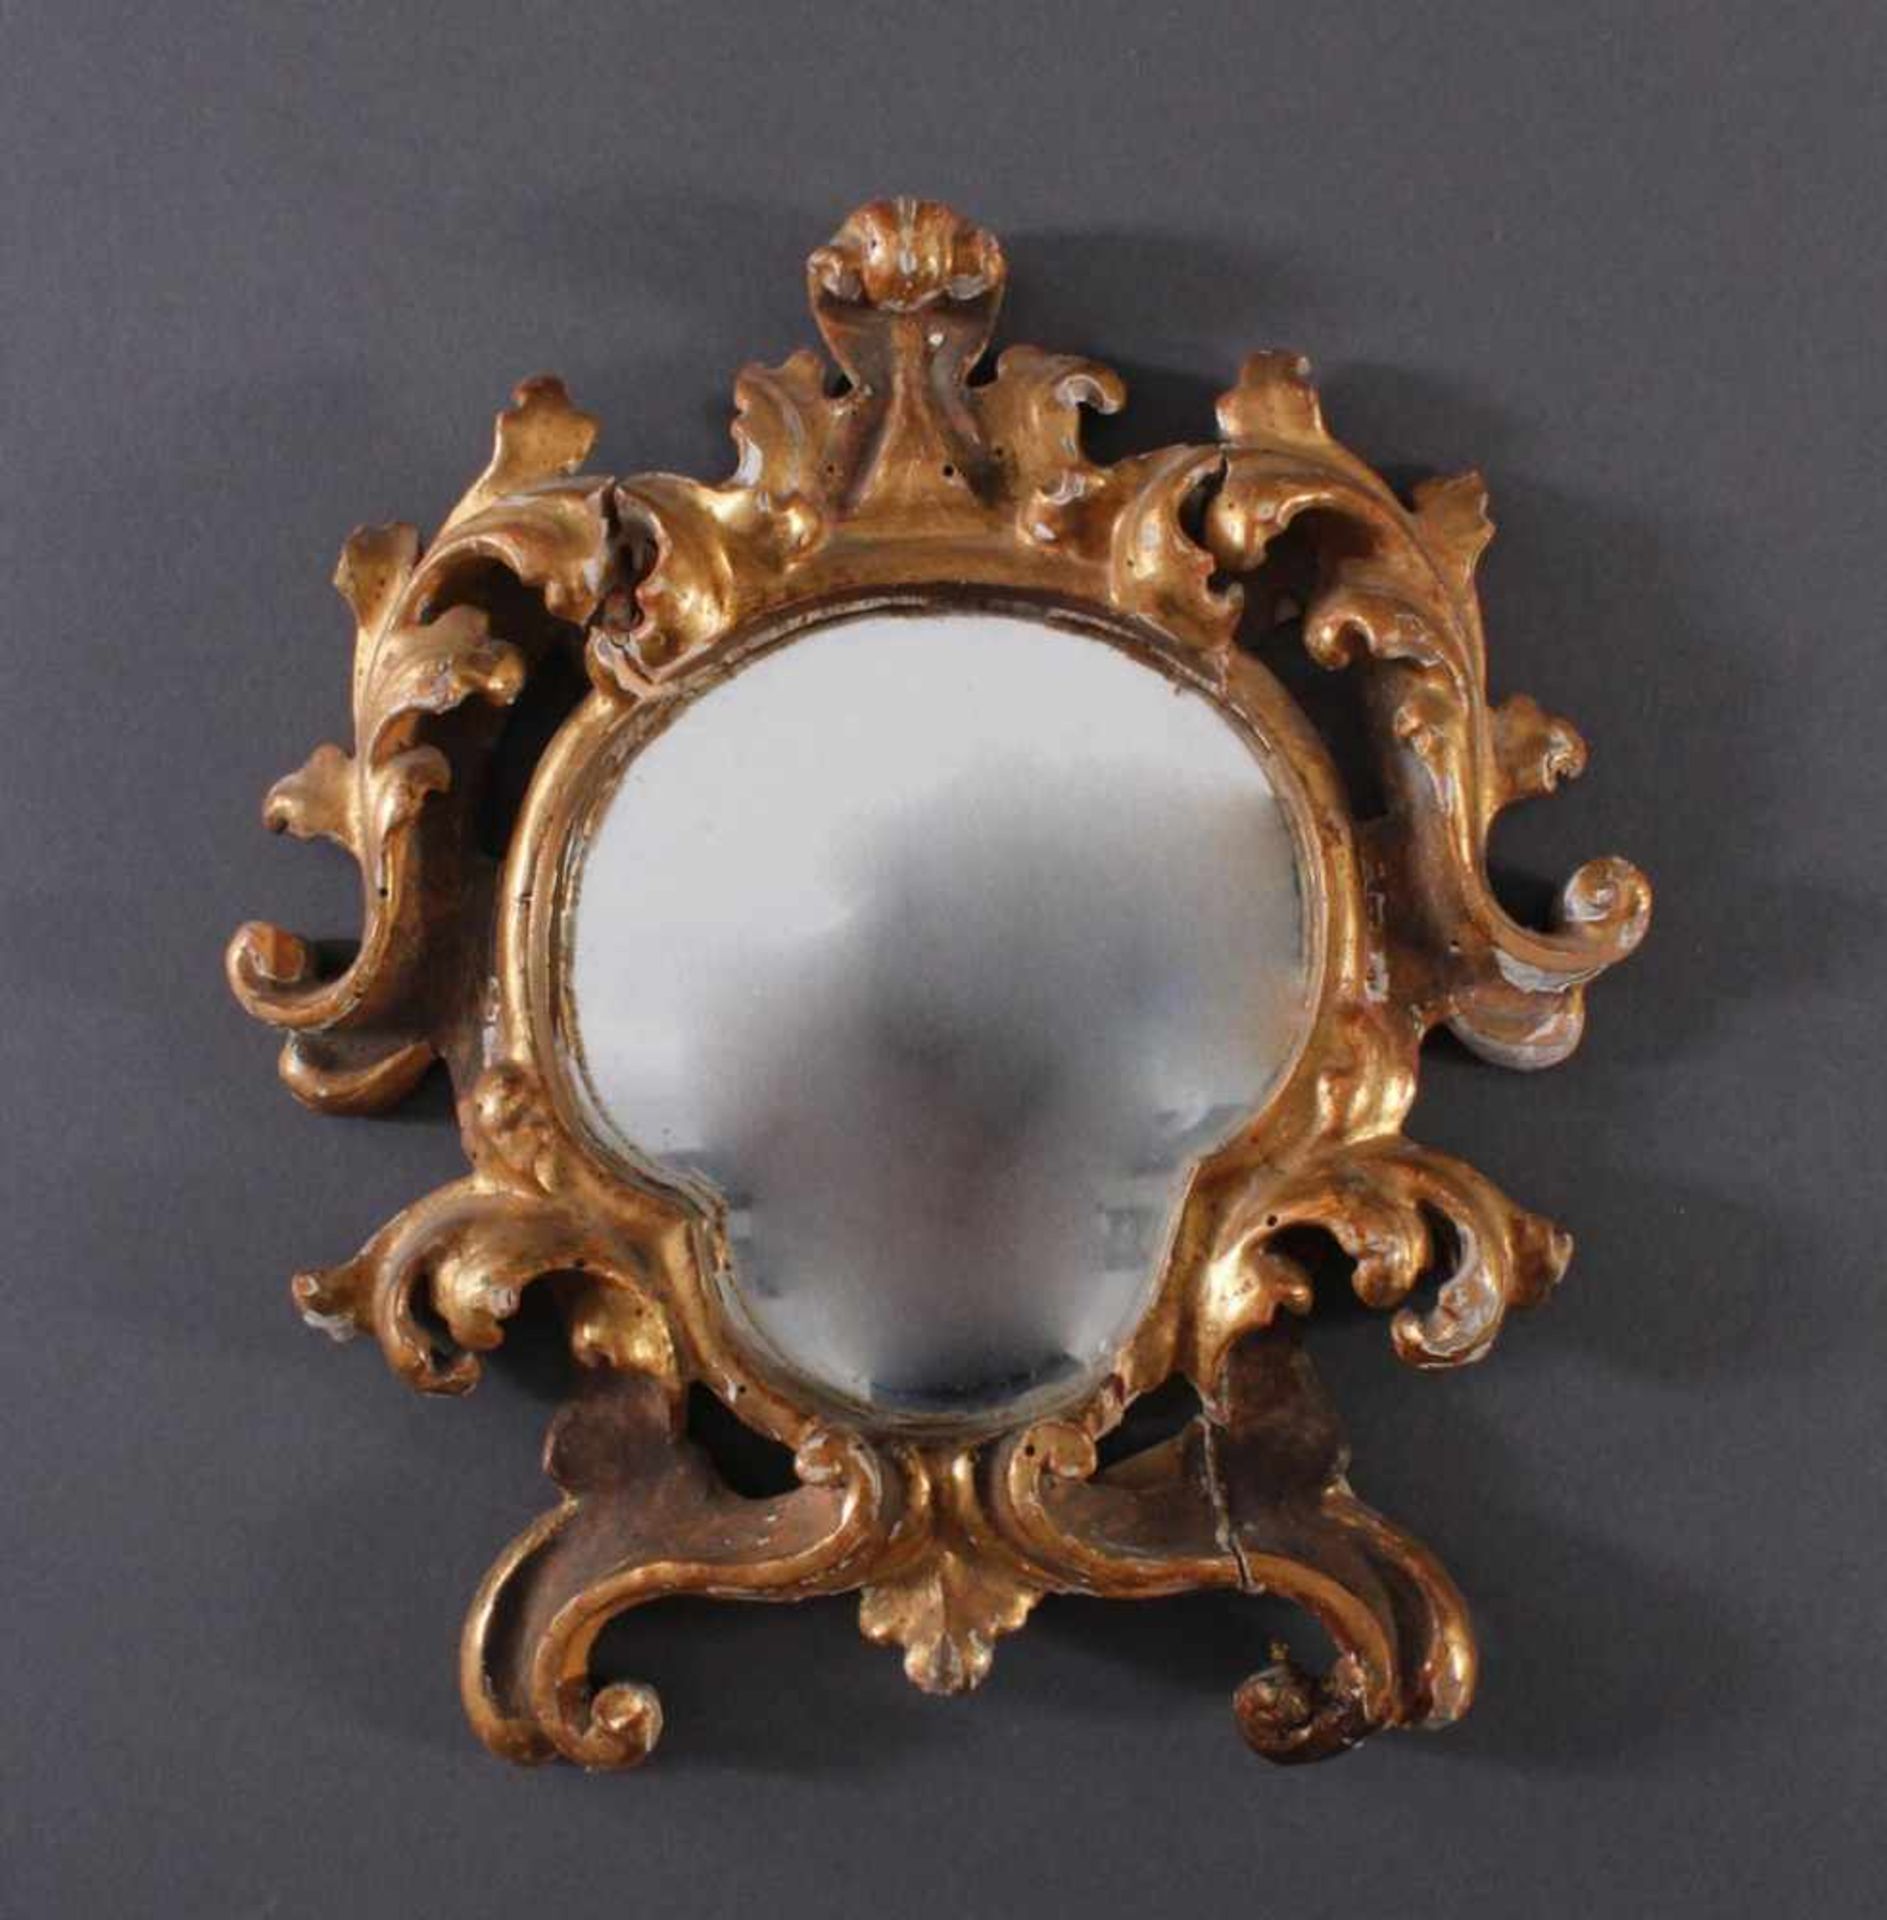 Kleiner Barockspiegel, 18. Jh.Holz geschnitzt, vergoldet, altes Glas, Abplatzungen,